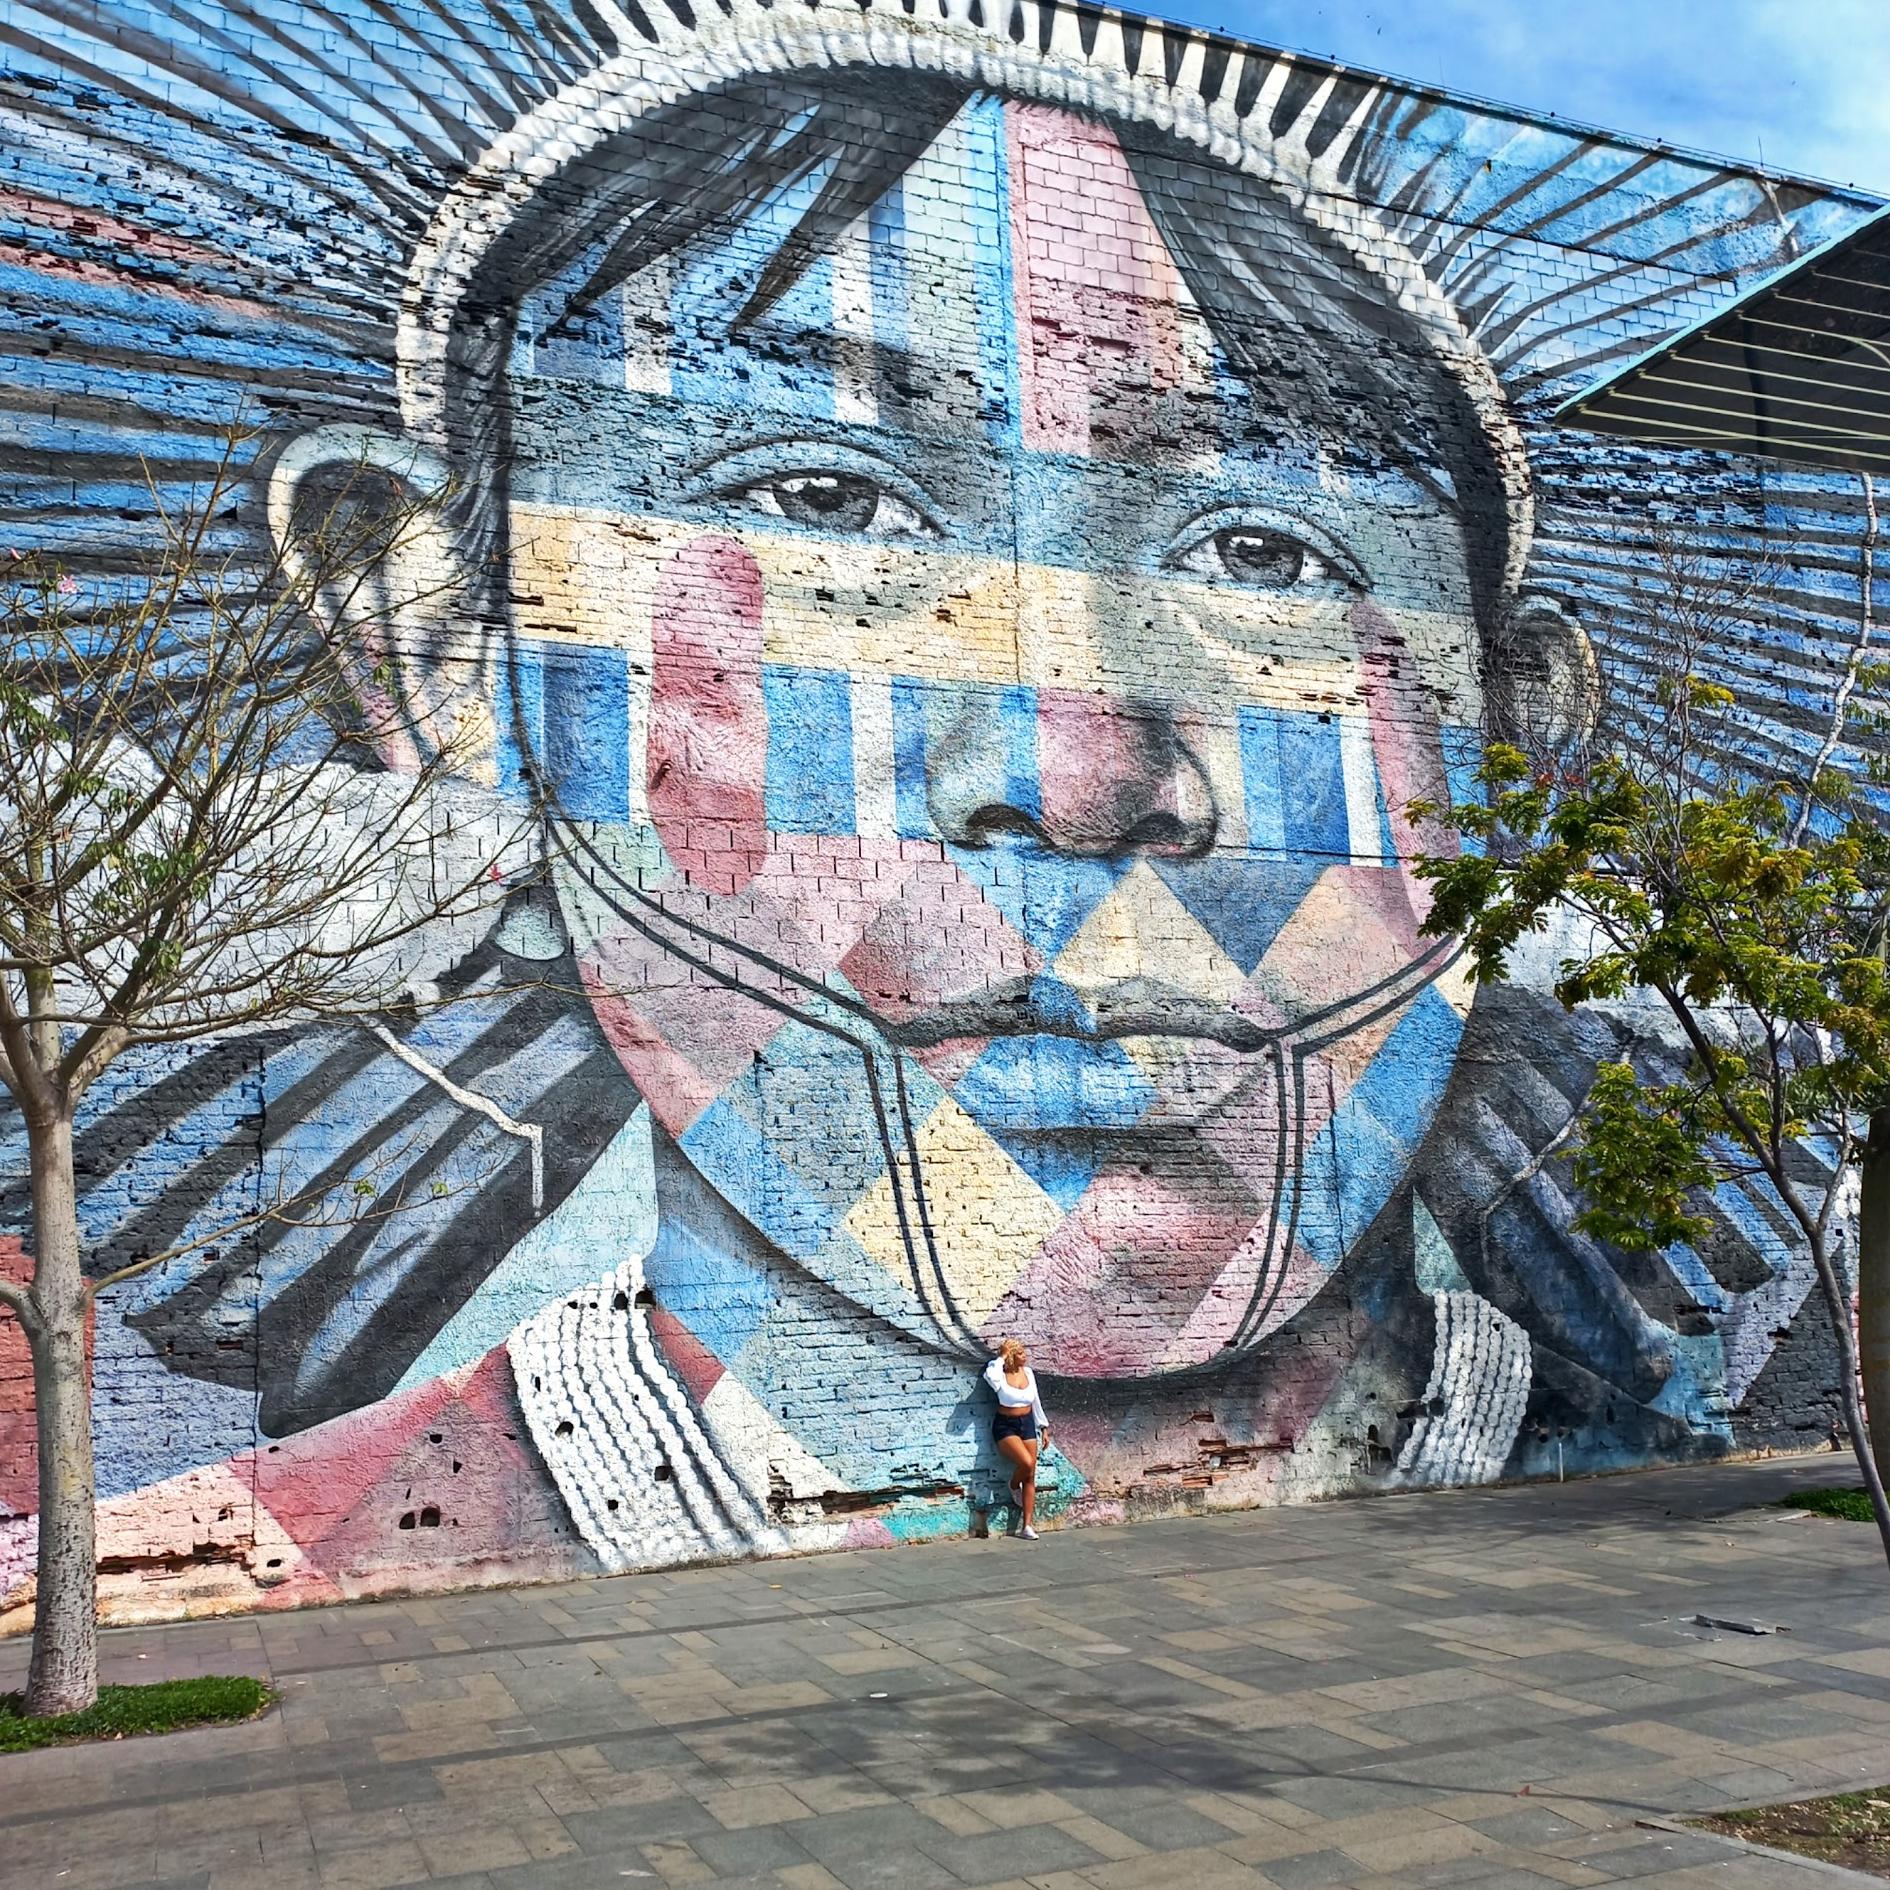 Mural de Eduardo Kobra em homenagem a Ayrton Senna